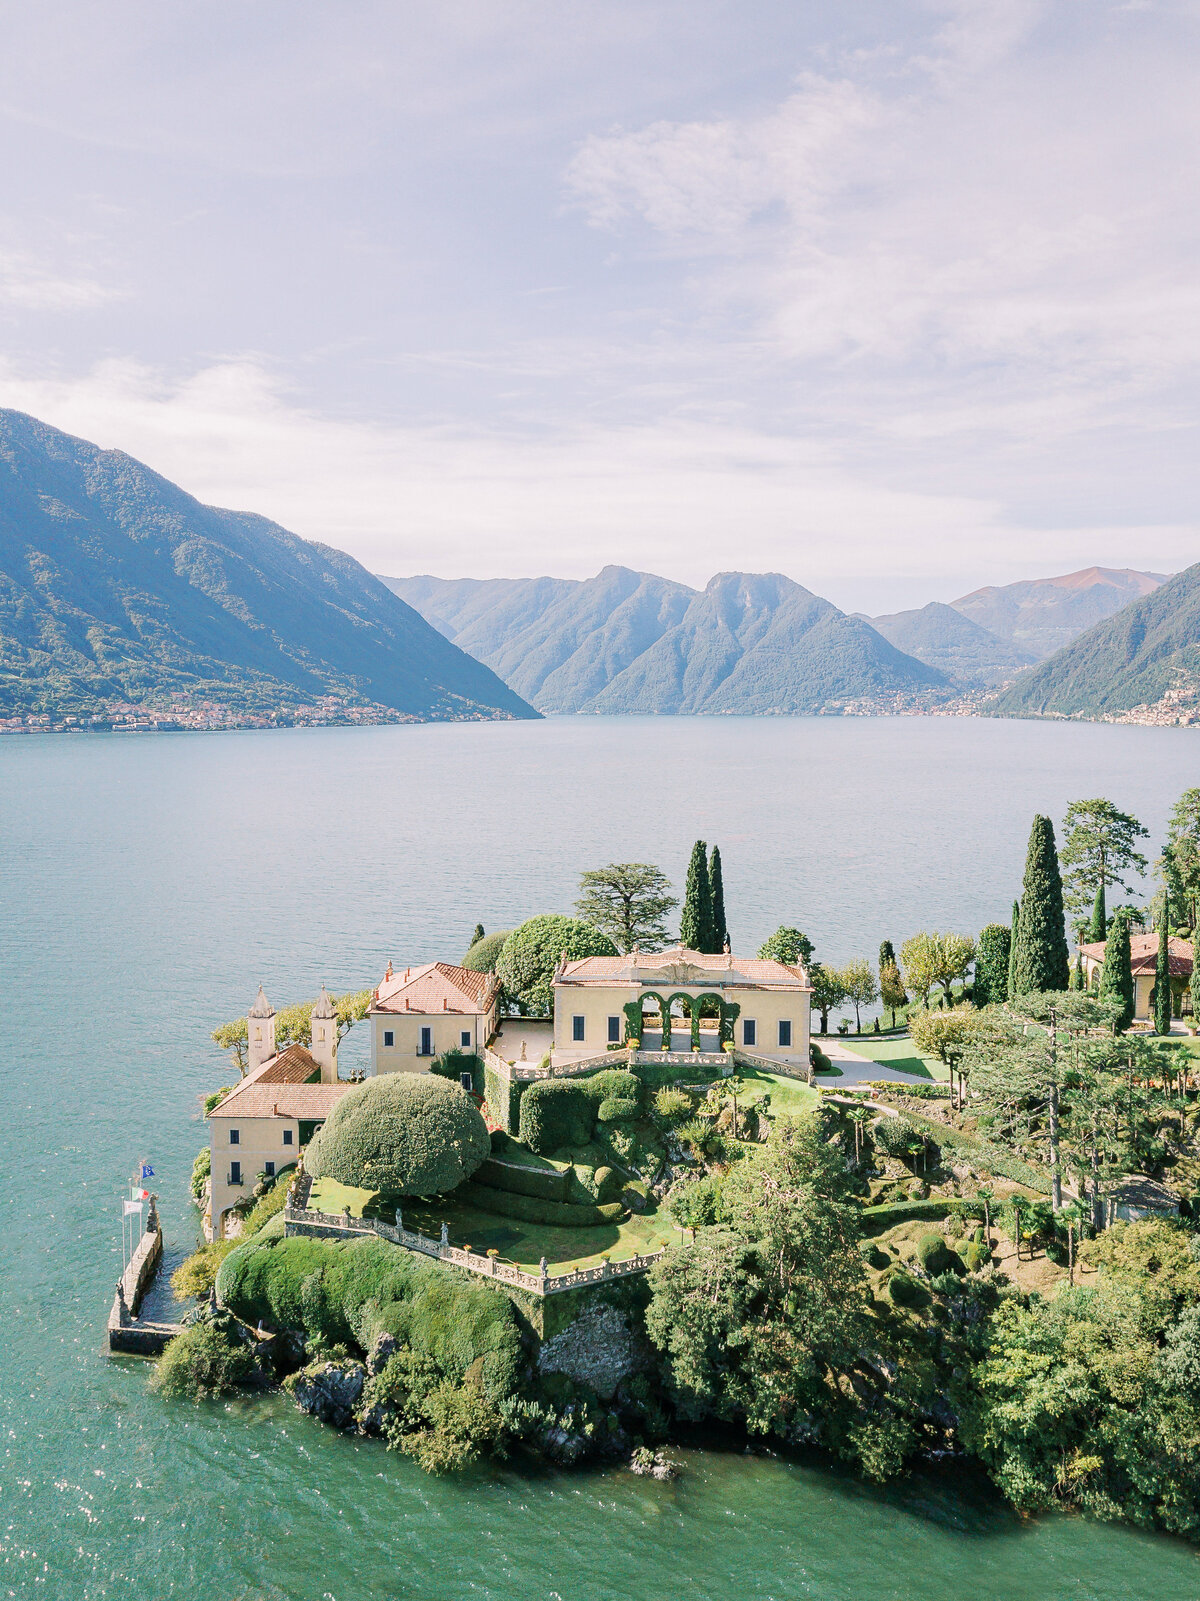 Villa Balbianello Lake Como best wedding venues